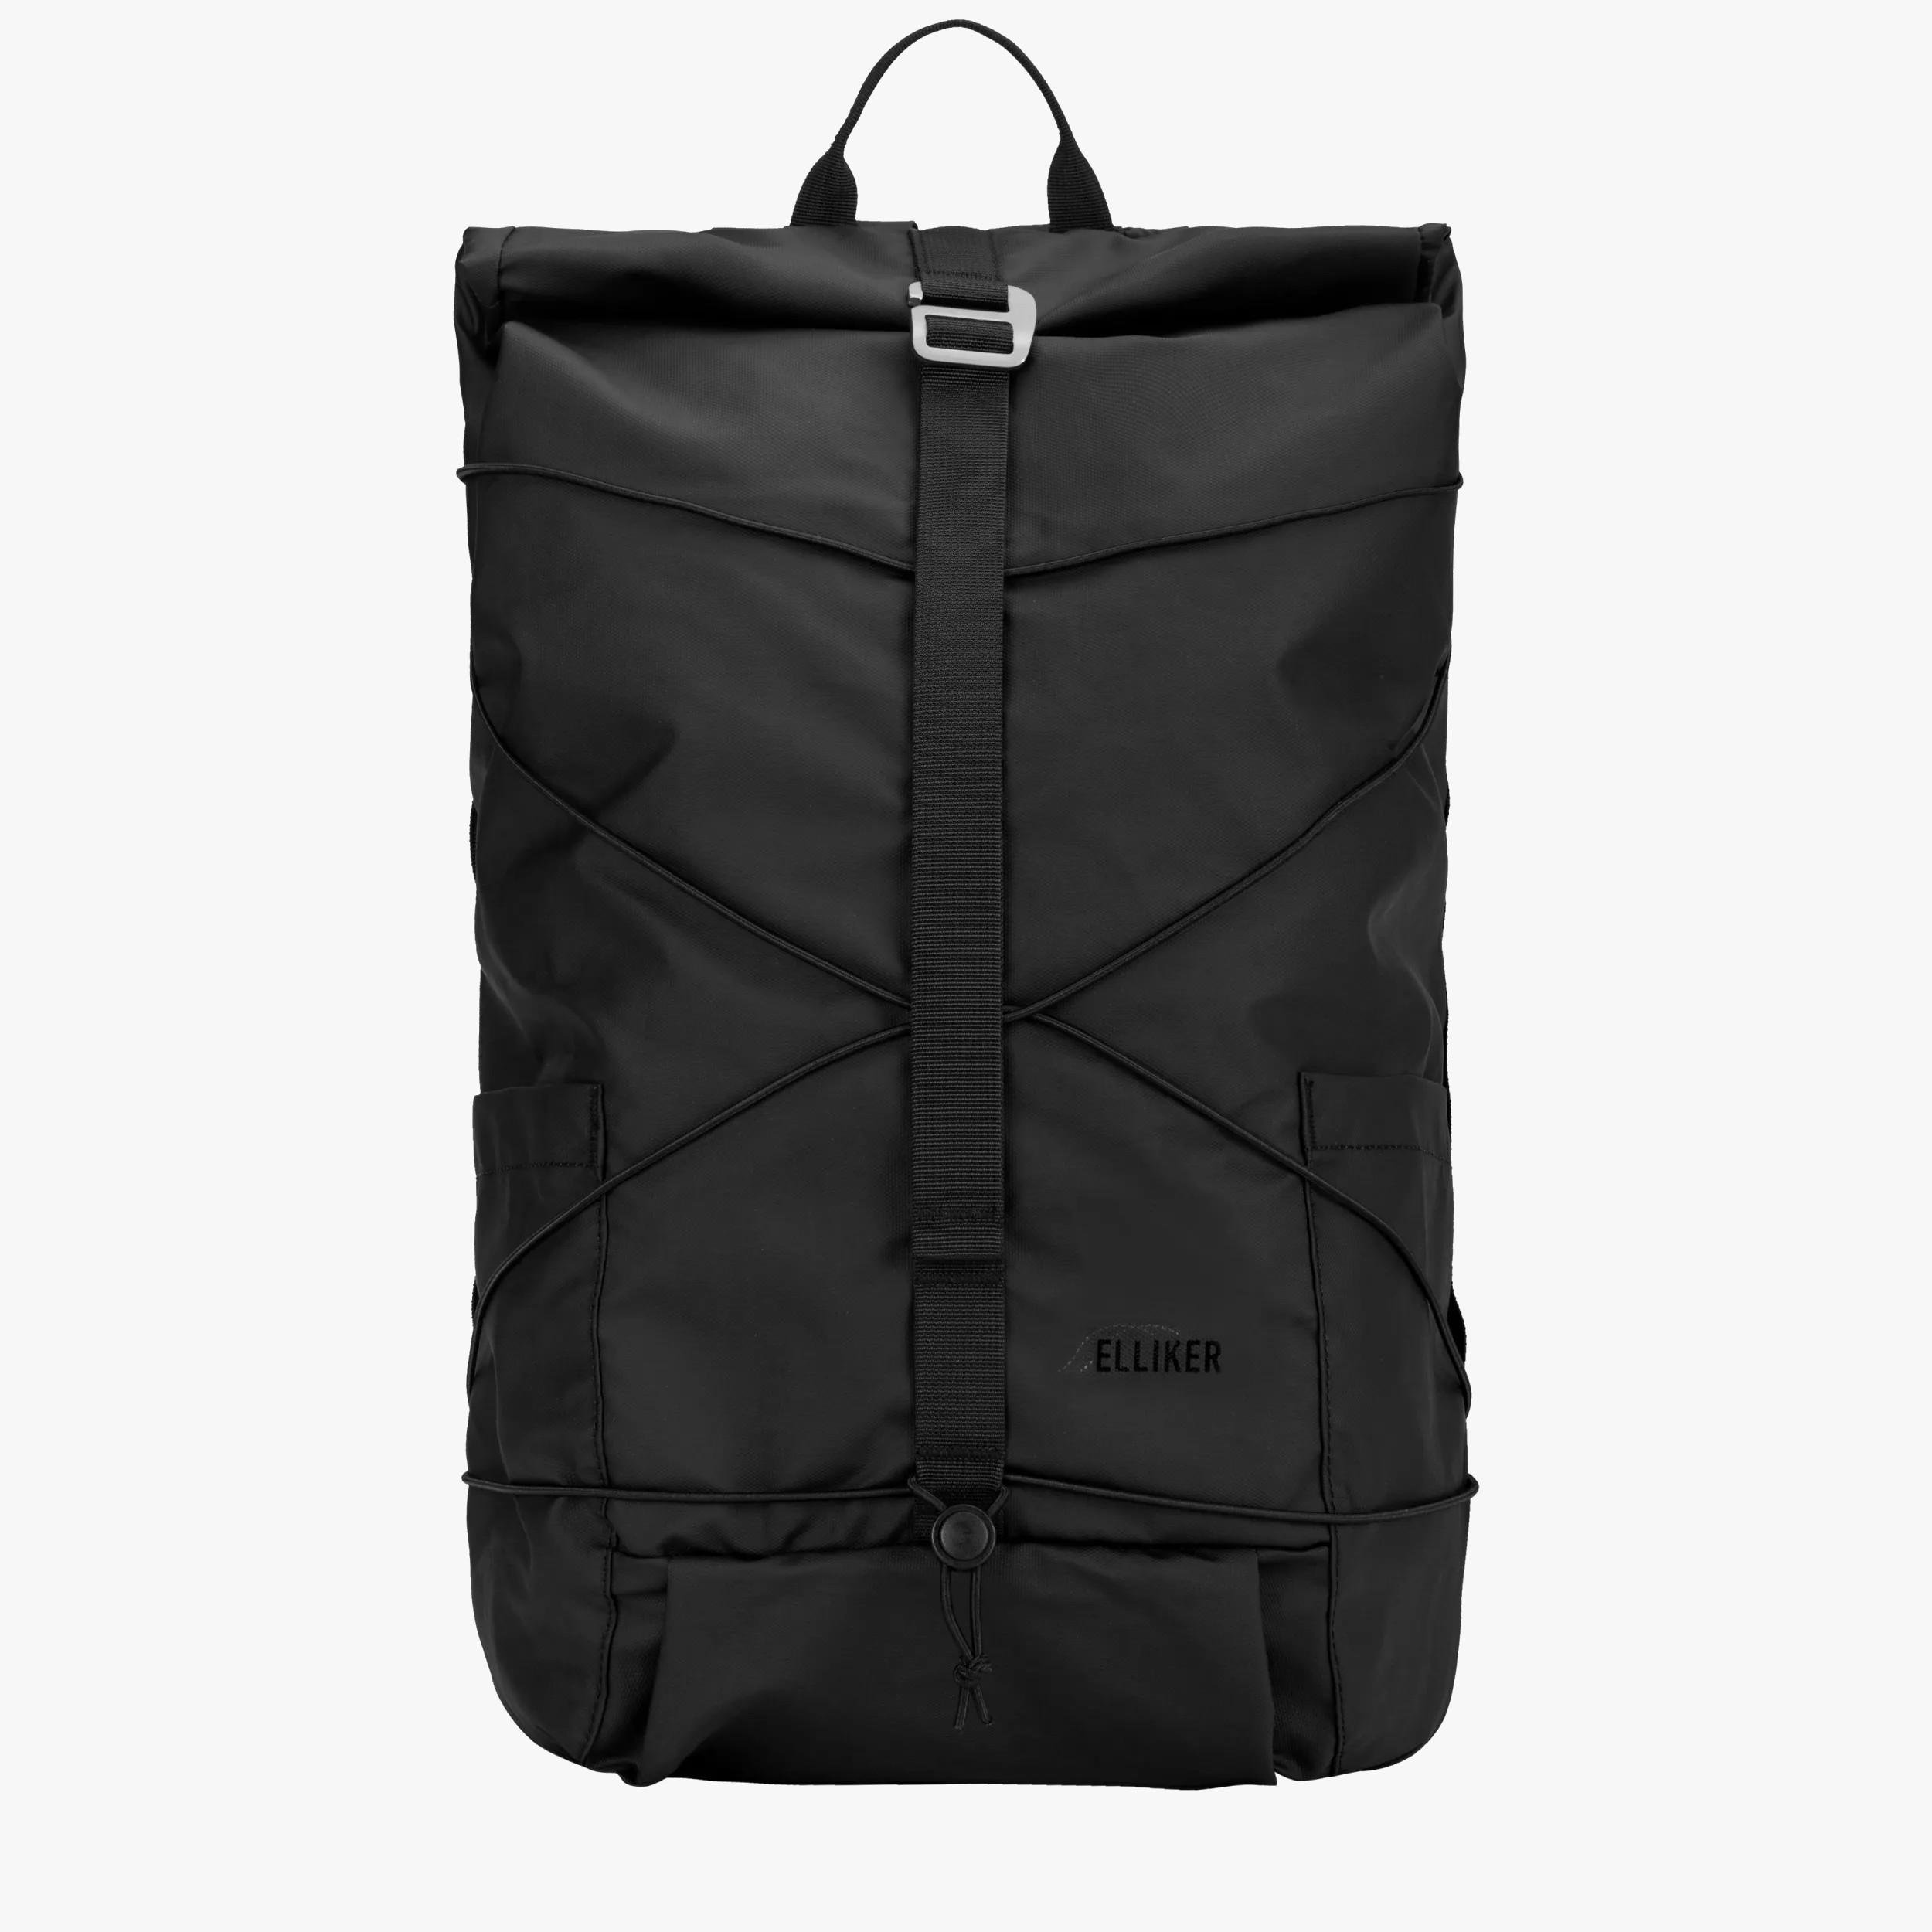 Elliker Dayle Roll Top Backpack 2125L Black